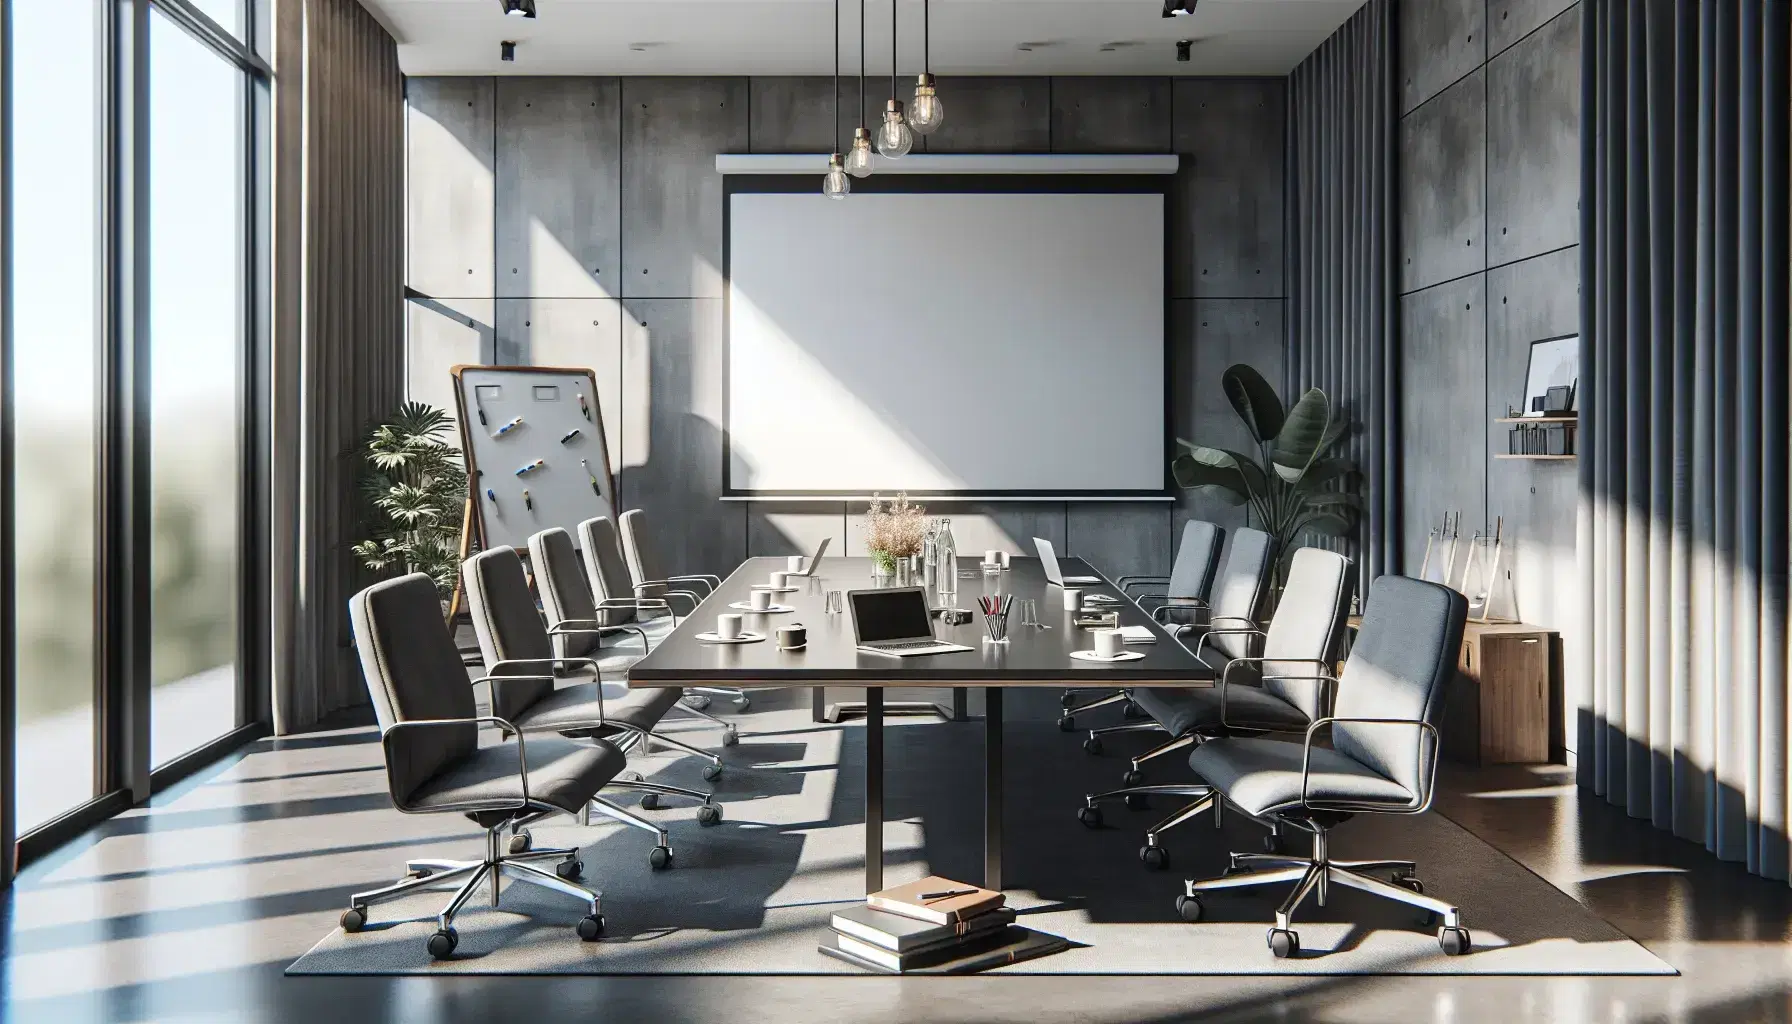 Sala de reuniones espaciosa con mesa rectangular de madera, sillas grises, laptops, libretas, taza de café y botella de agua, junto a pizarra blanca y proyector apagado.